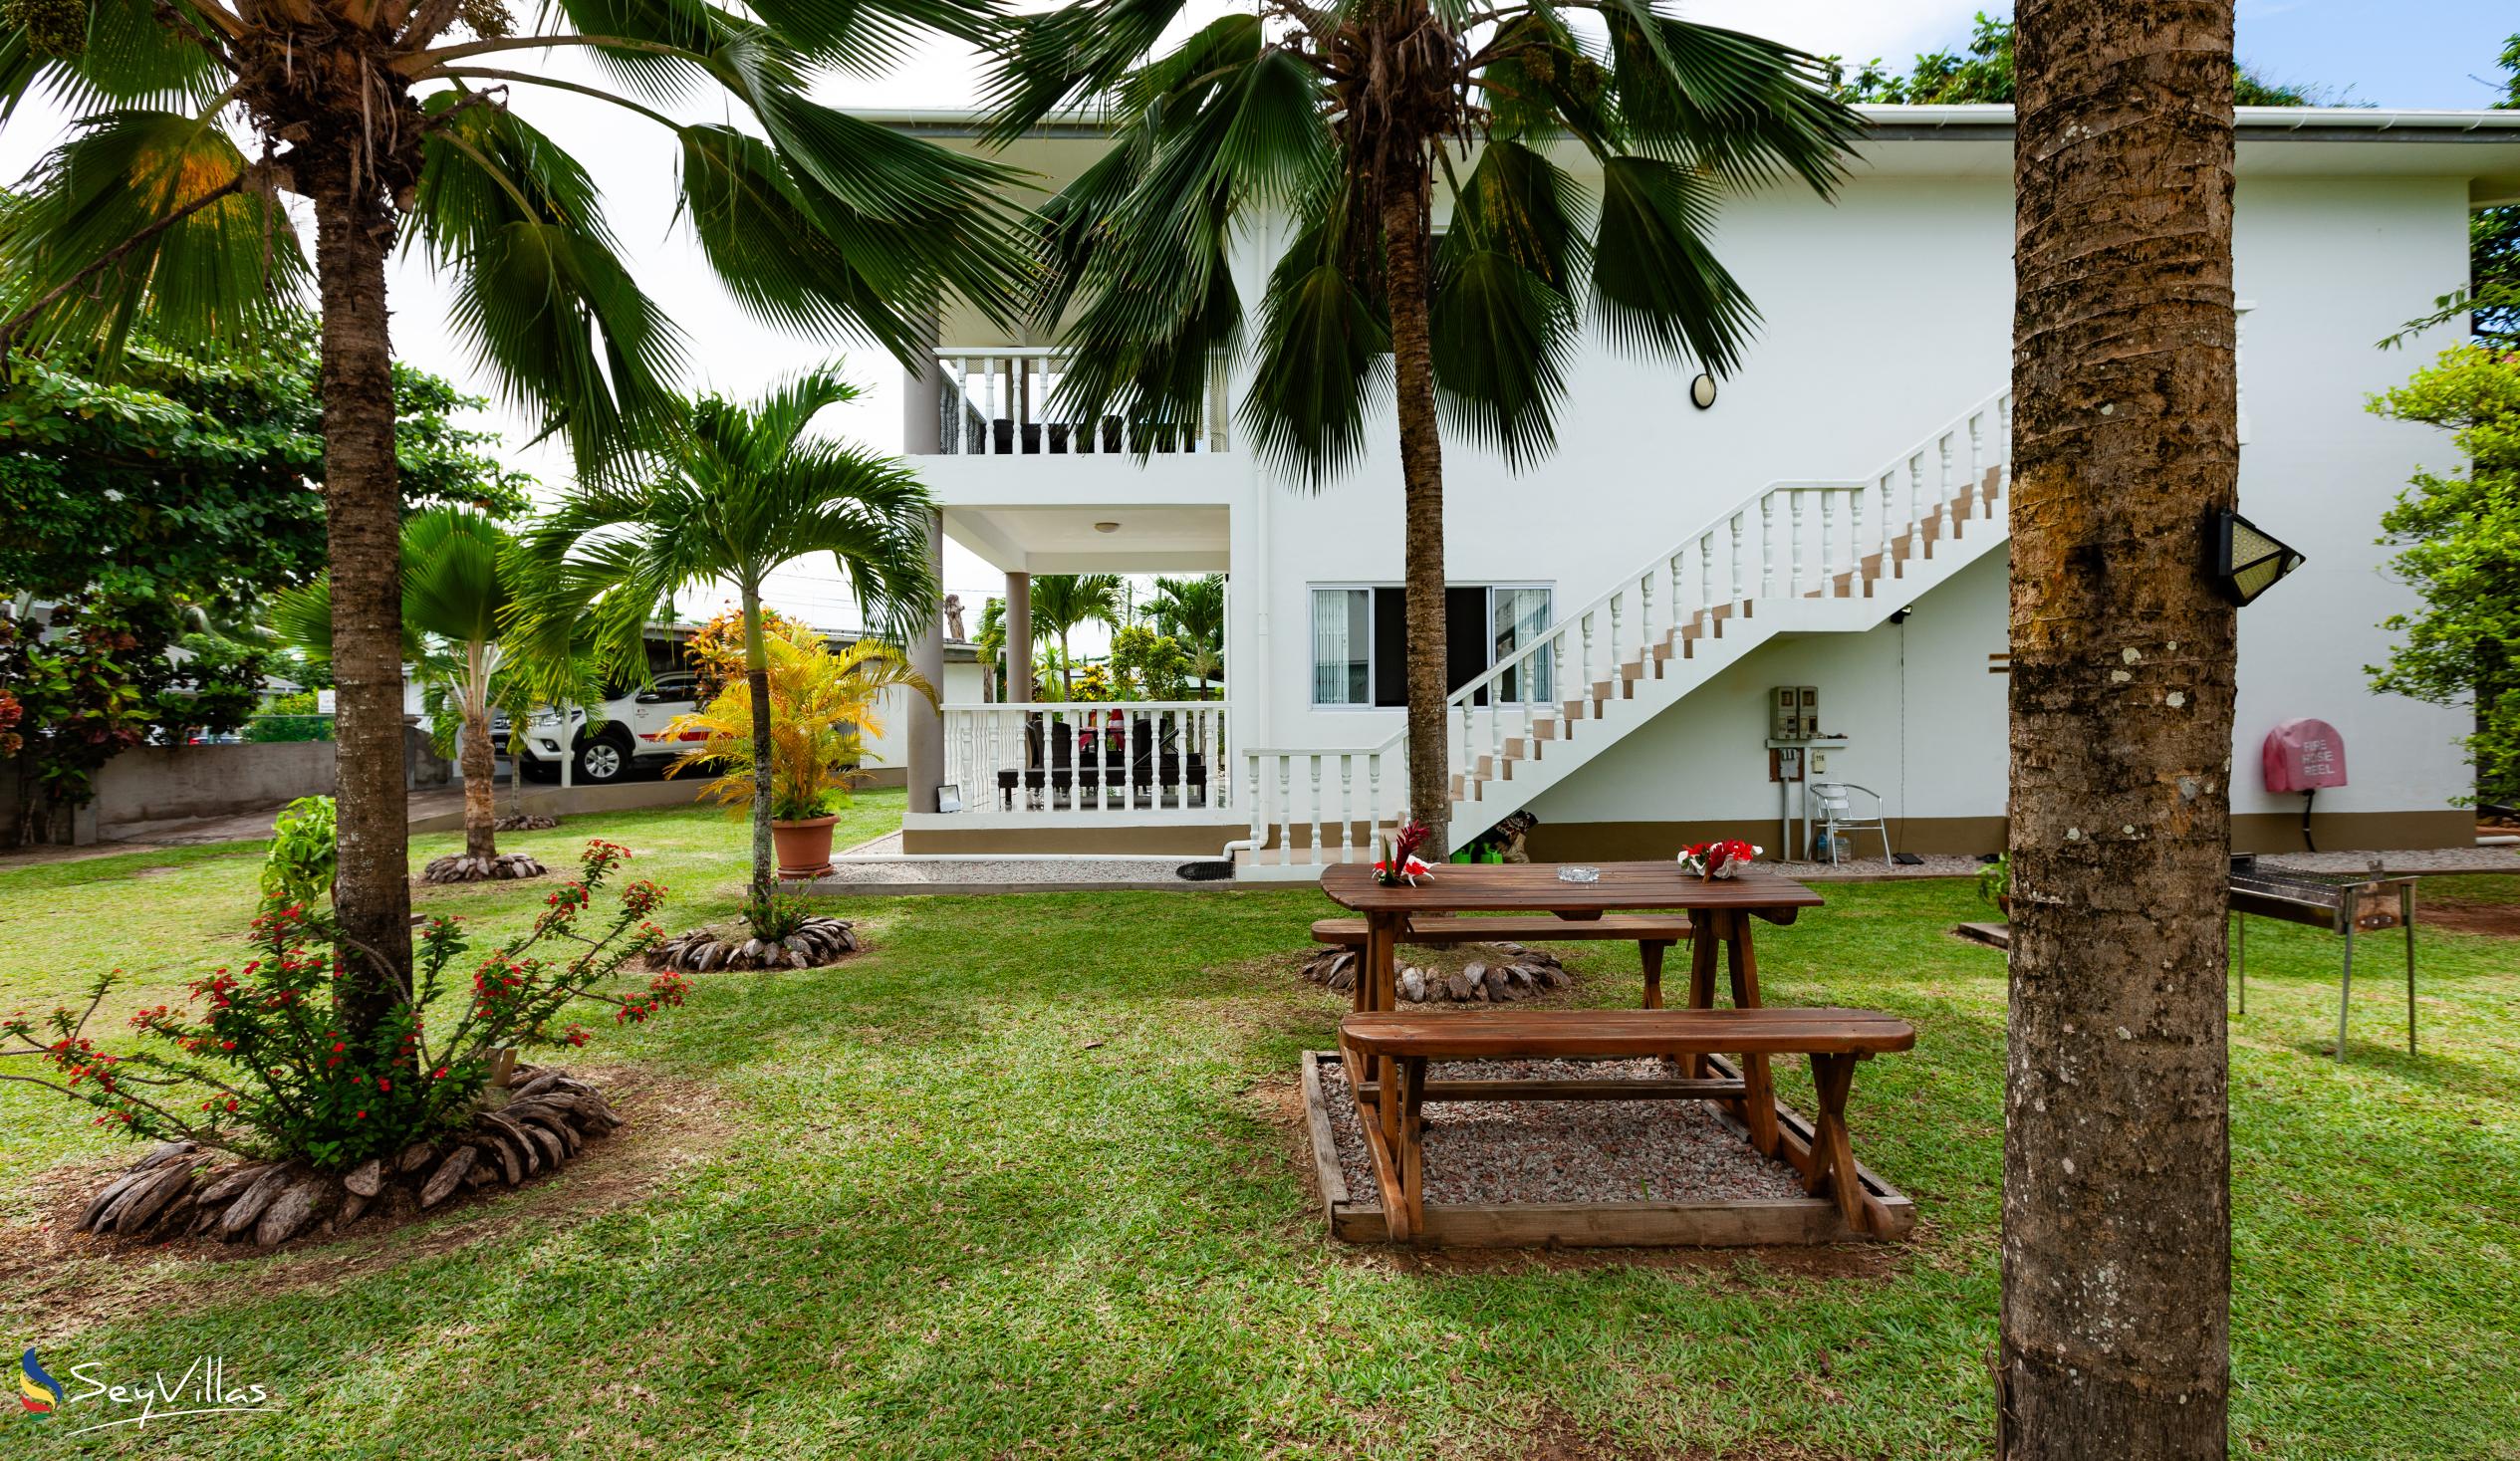 Foto 12: Casa Tara Villas - Aussenbereich - Praslin (Seychellen)